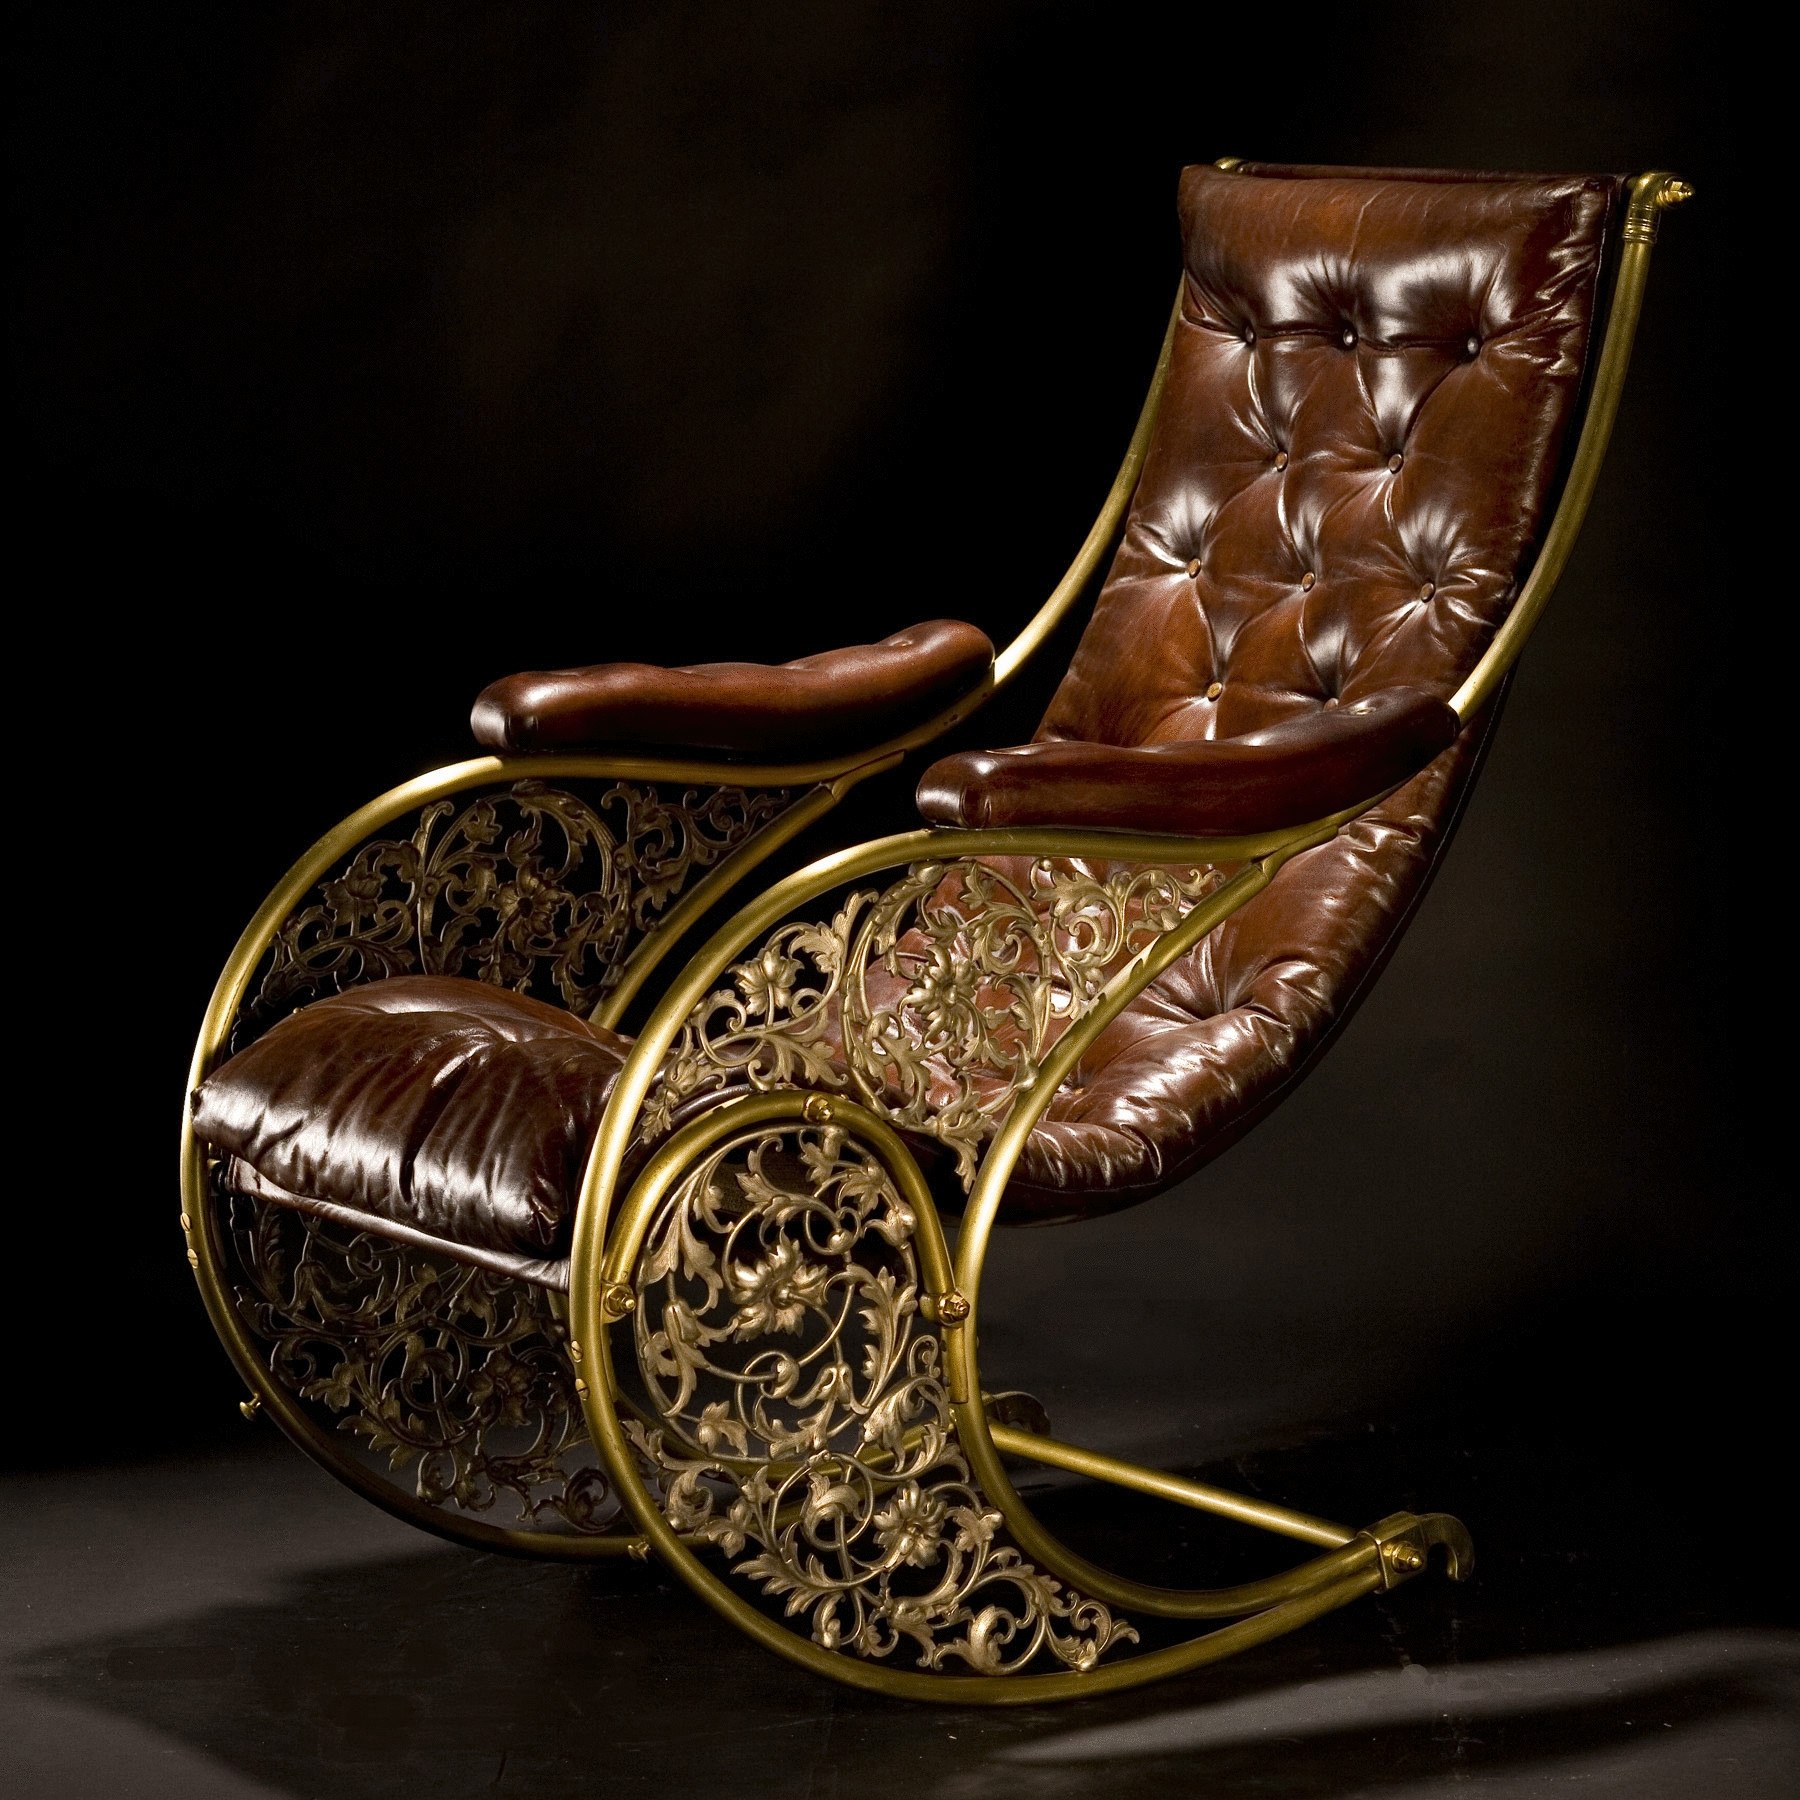 Кресло-качалка «Маргонда»